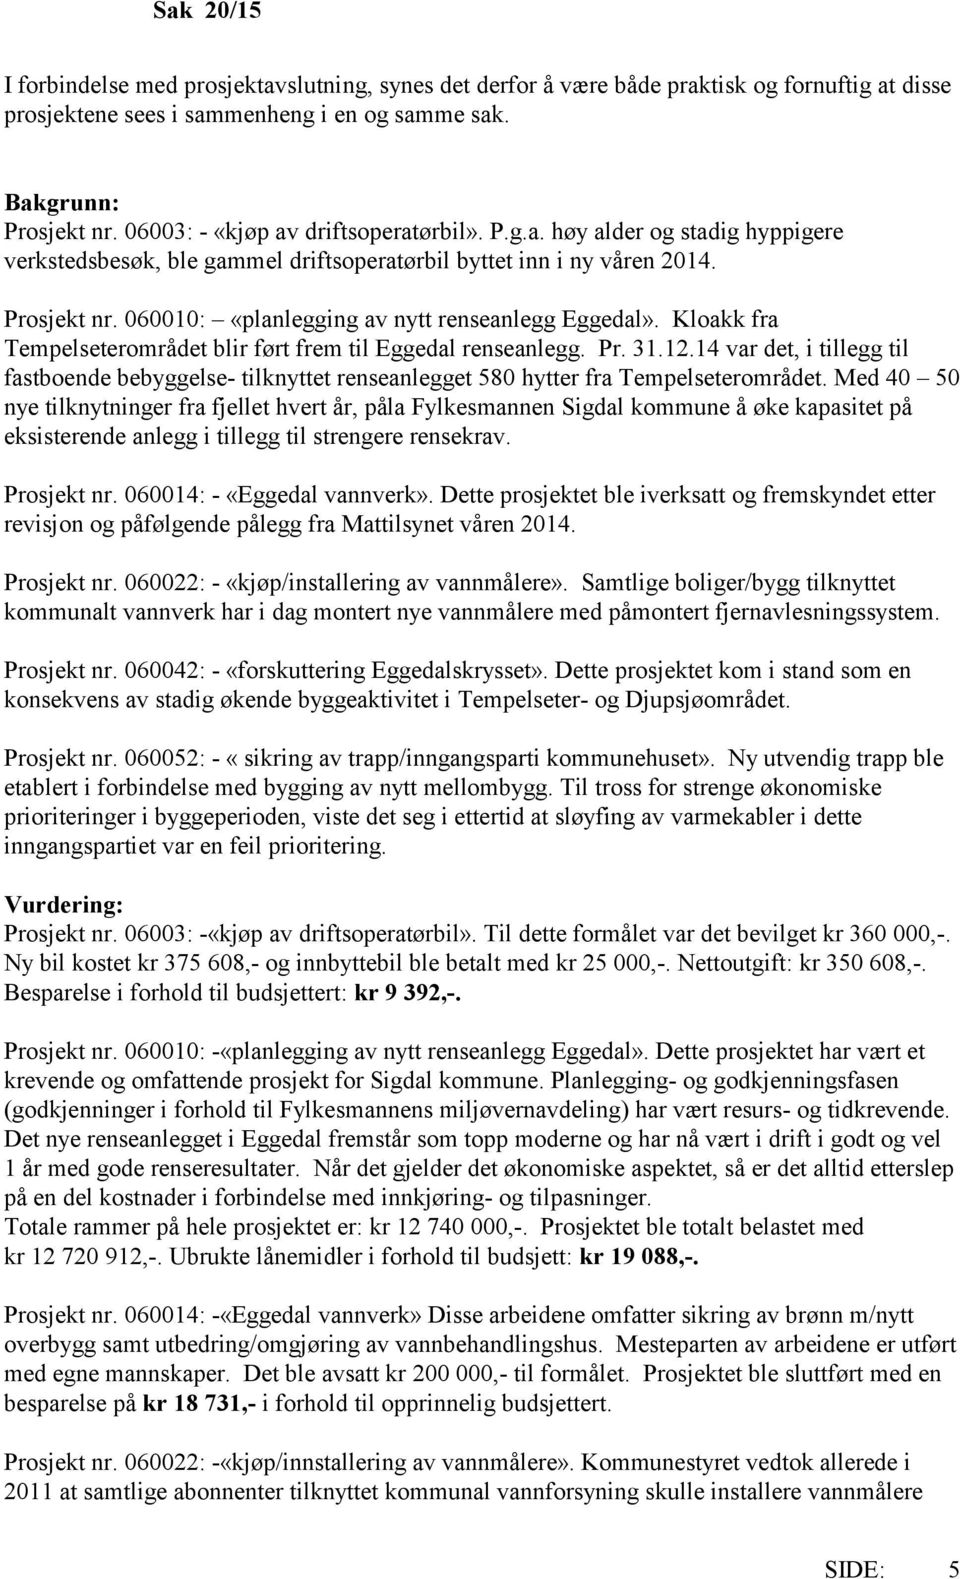 060010: «planlegging av nytt renseanlegg Eggedal». Kloakk fra Tempelseterområdet blir ført frem til Eggedal renseanlegg. Pr. 31.12.